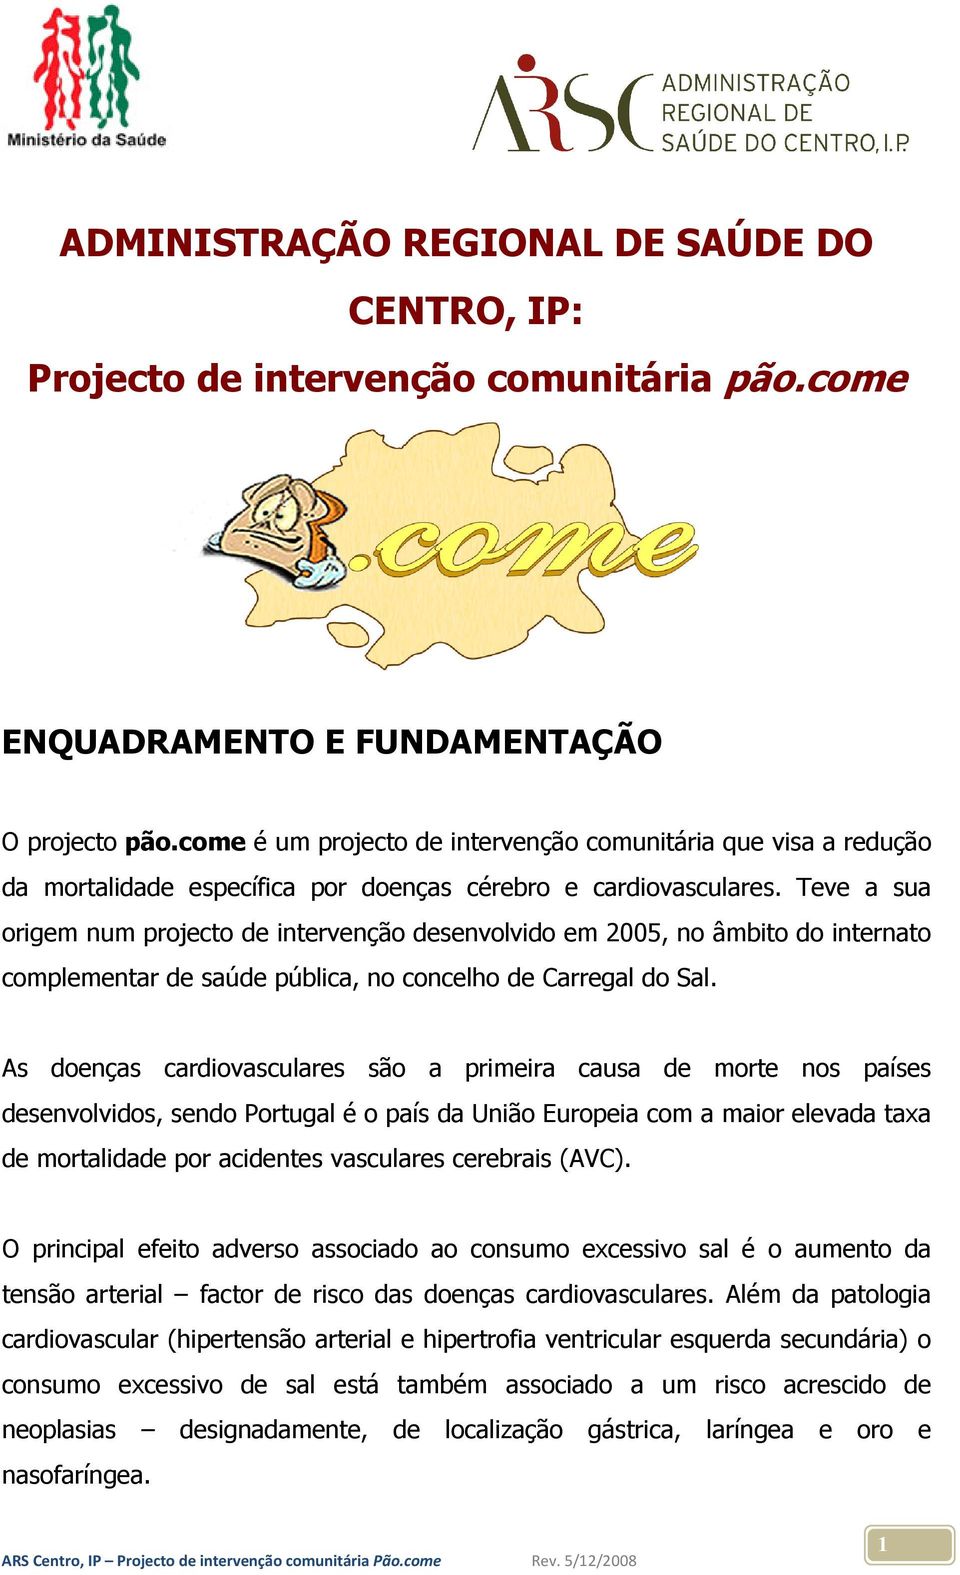 Teve a sua origem num projecto de intervenção desenvolvido em 2005, no âmbito do internato complementar de saúde pública, no concelho de Carregal do Sal.